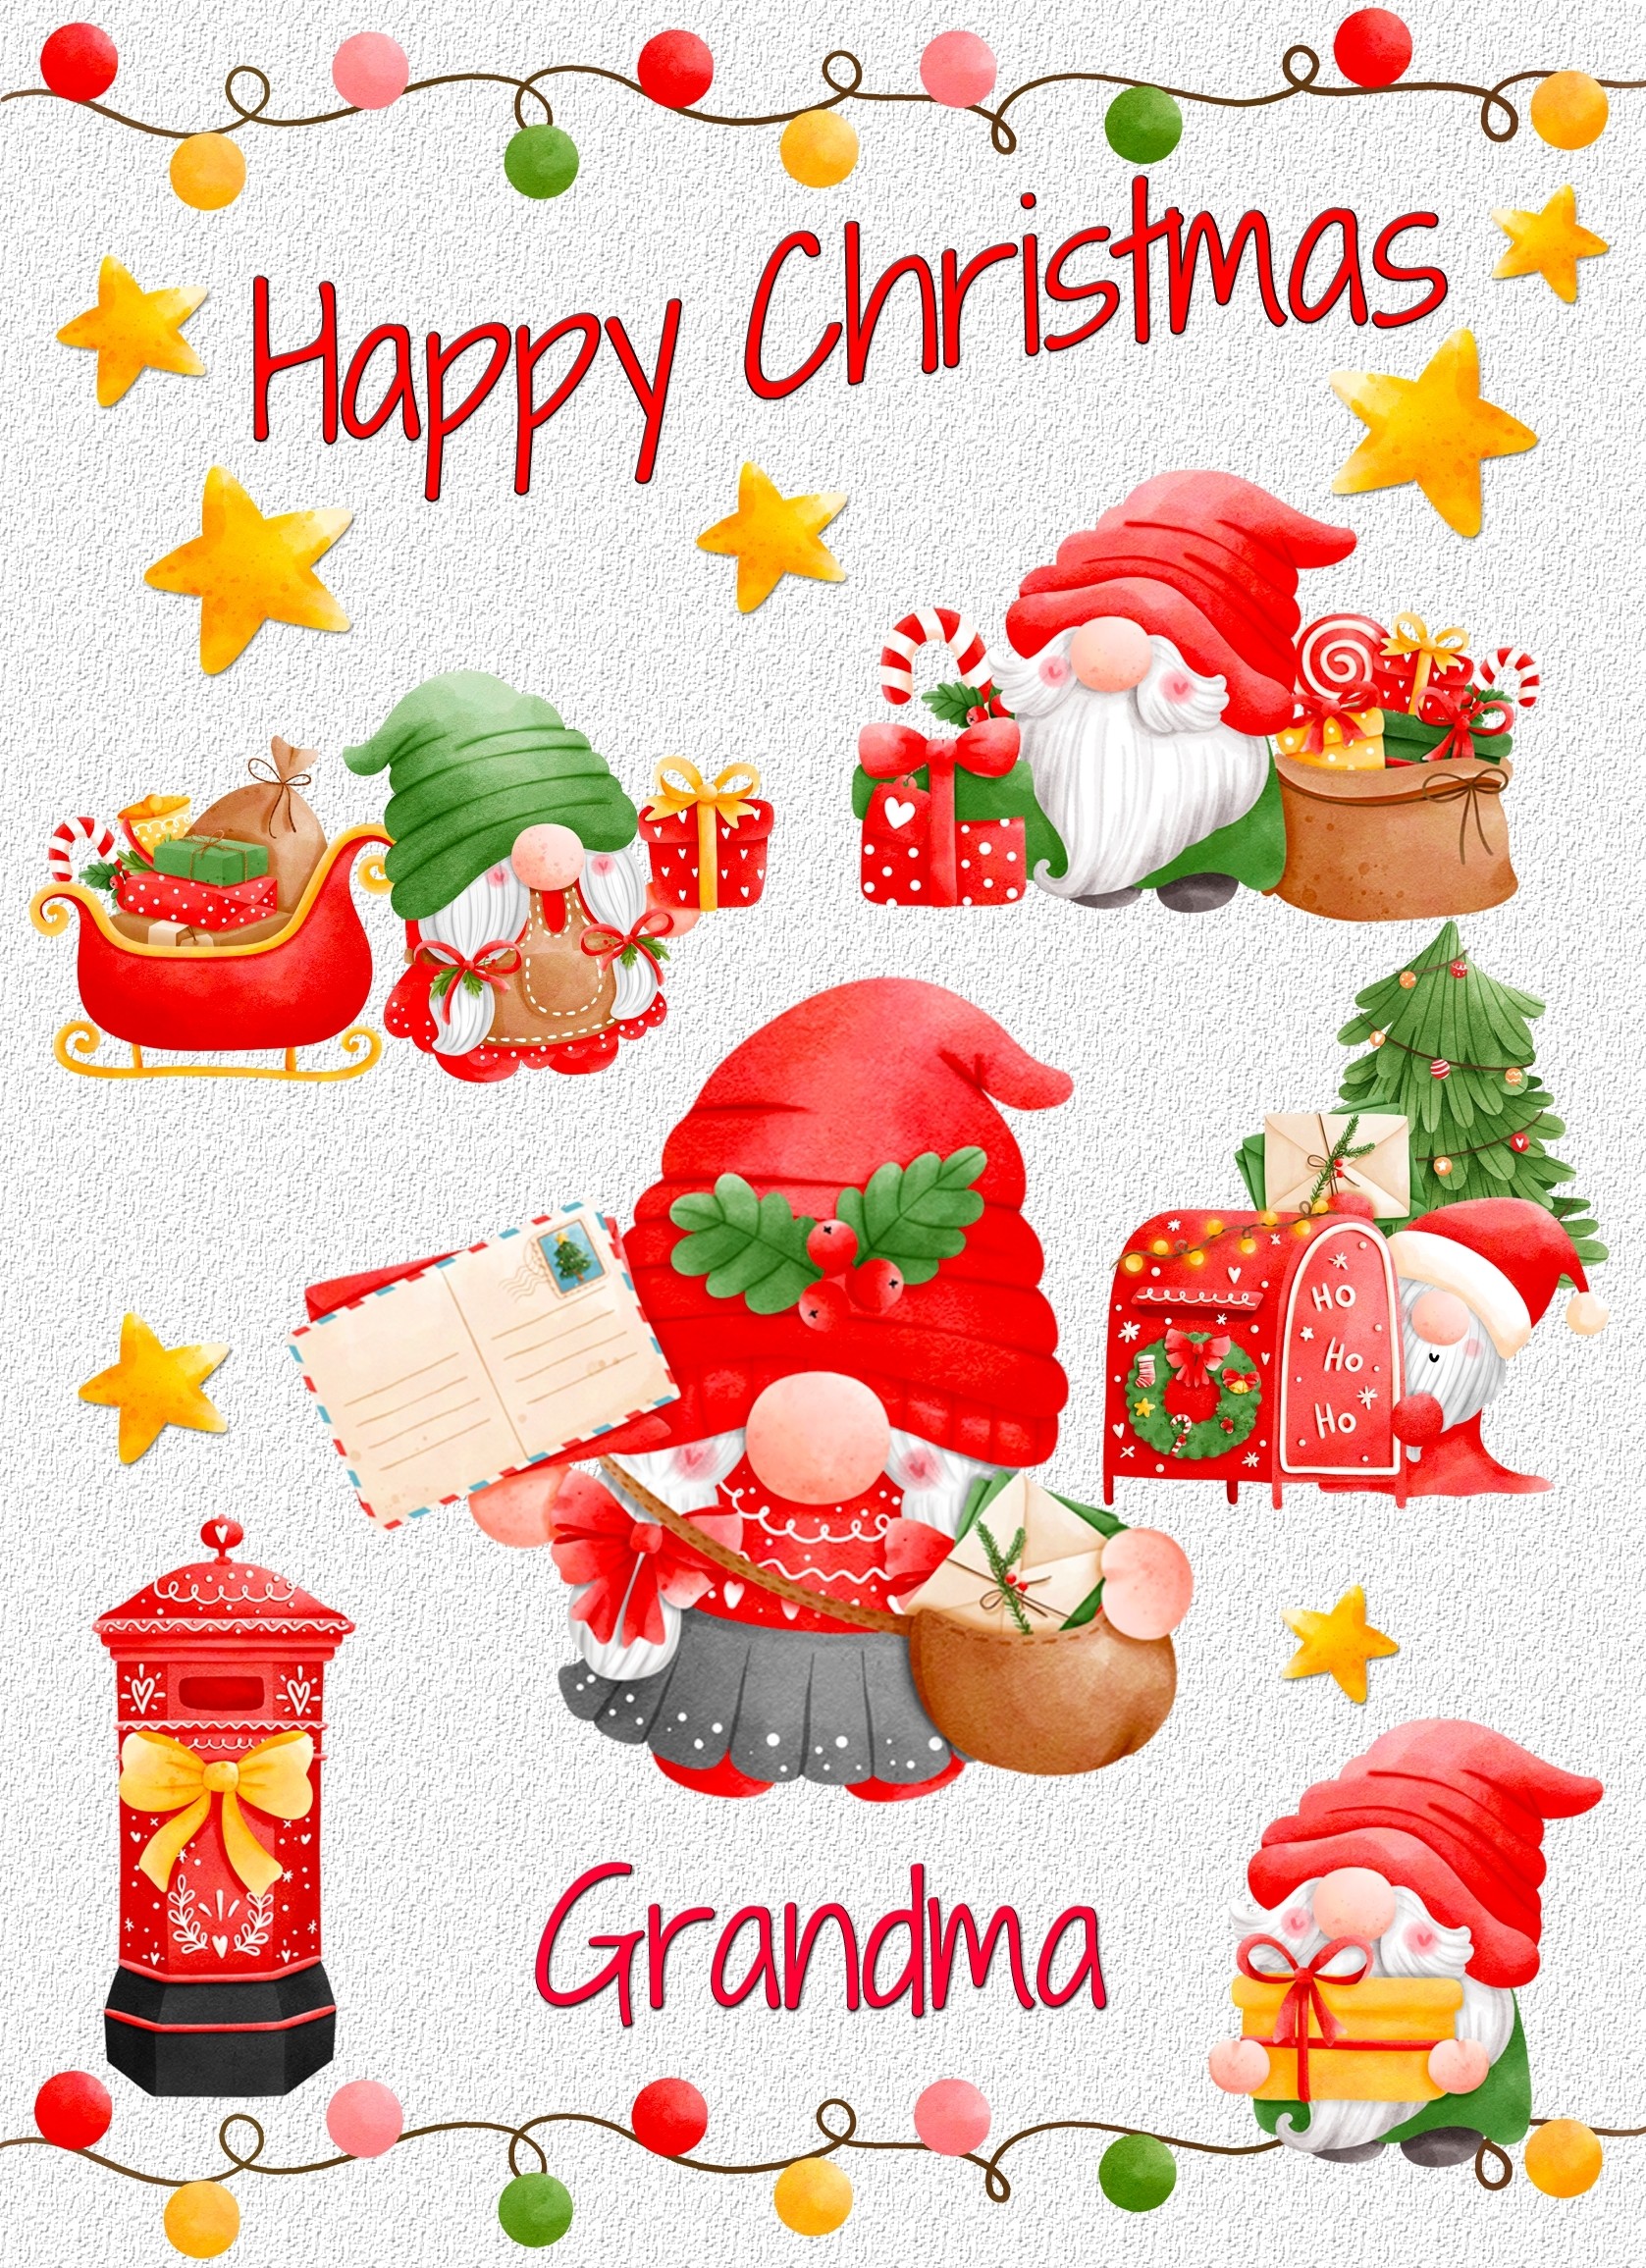 Christmas Card For Grandma (Gnome, White)